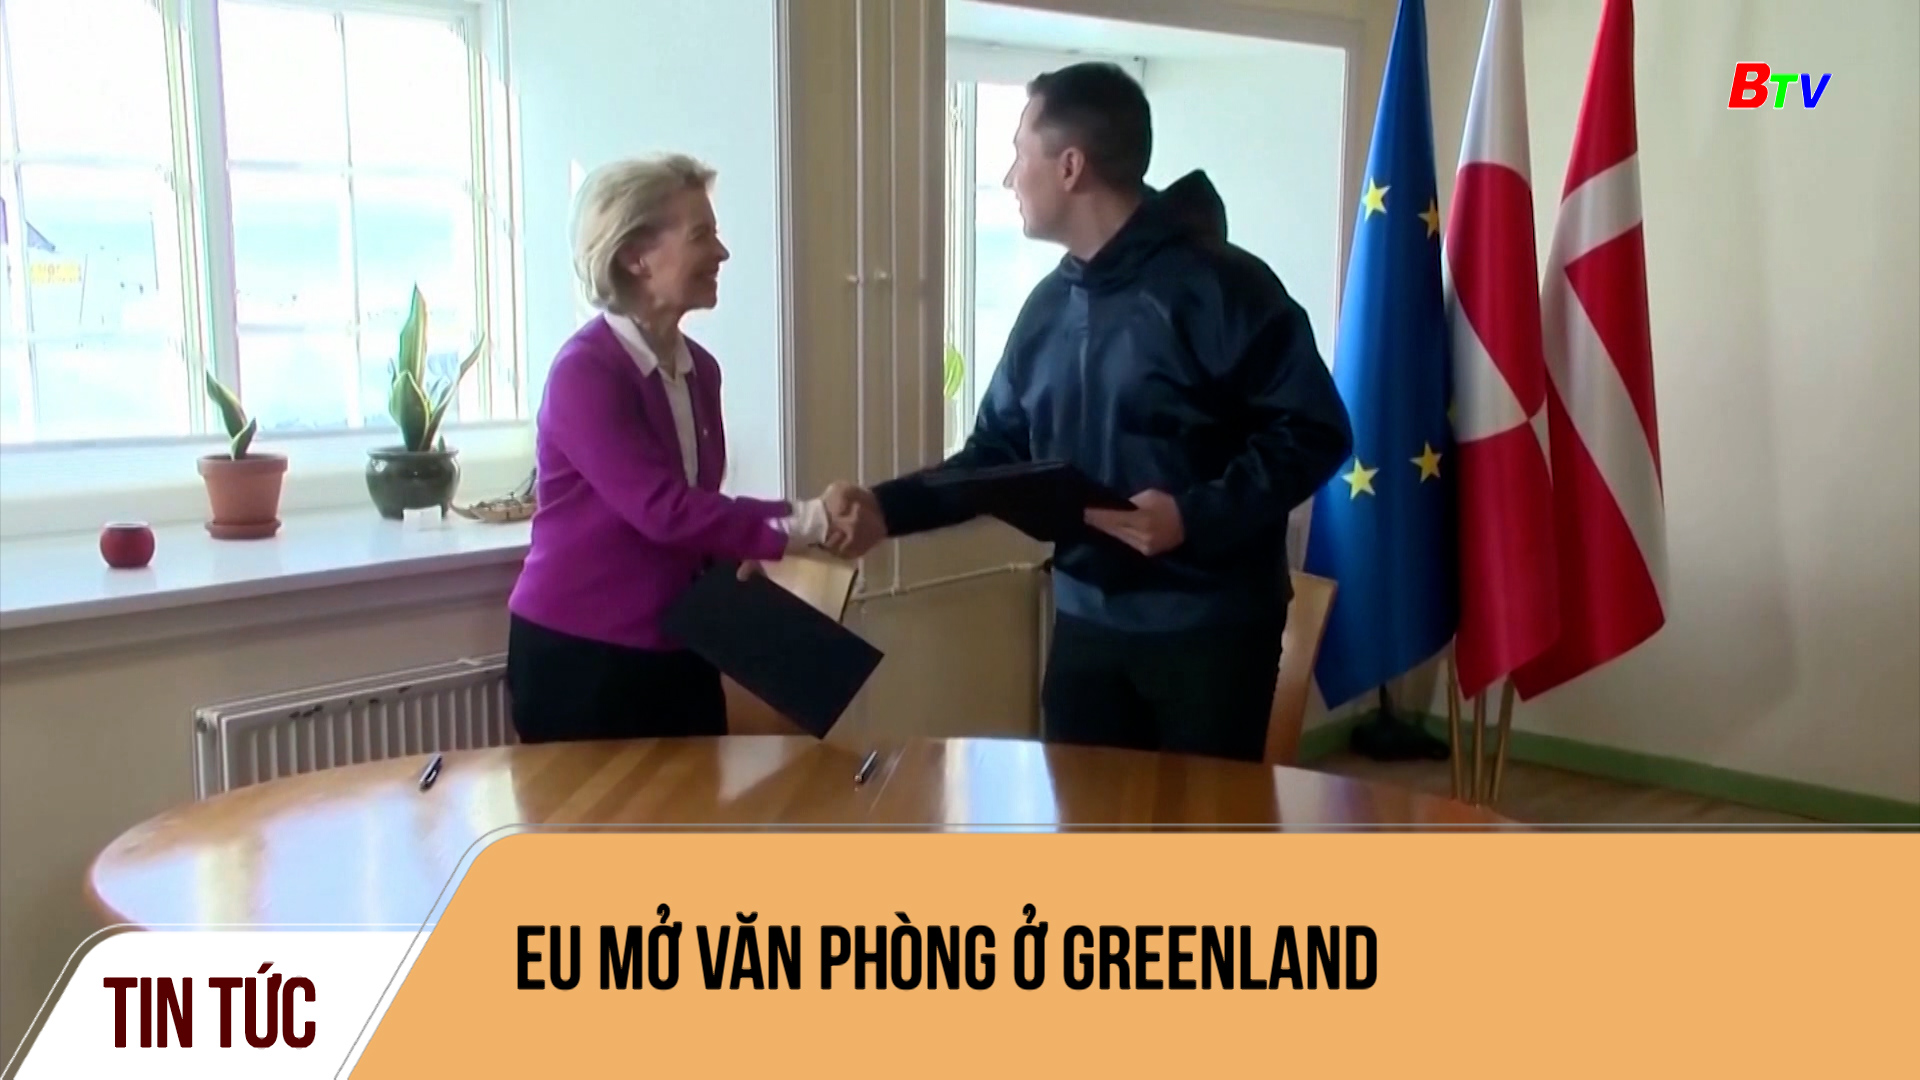 EU mở văn phòng ở Greenland